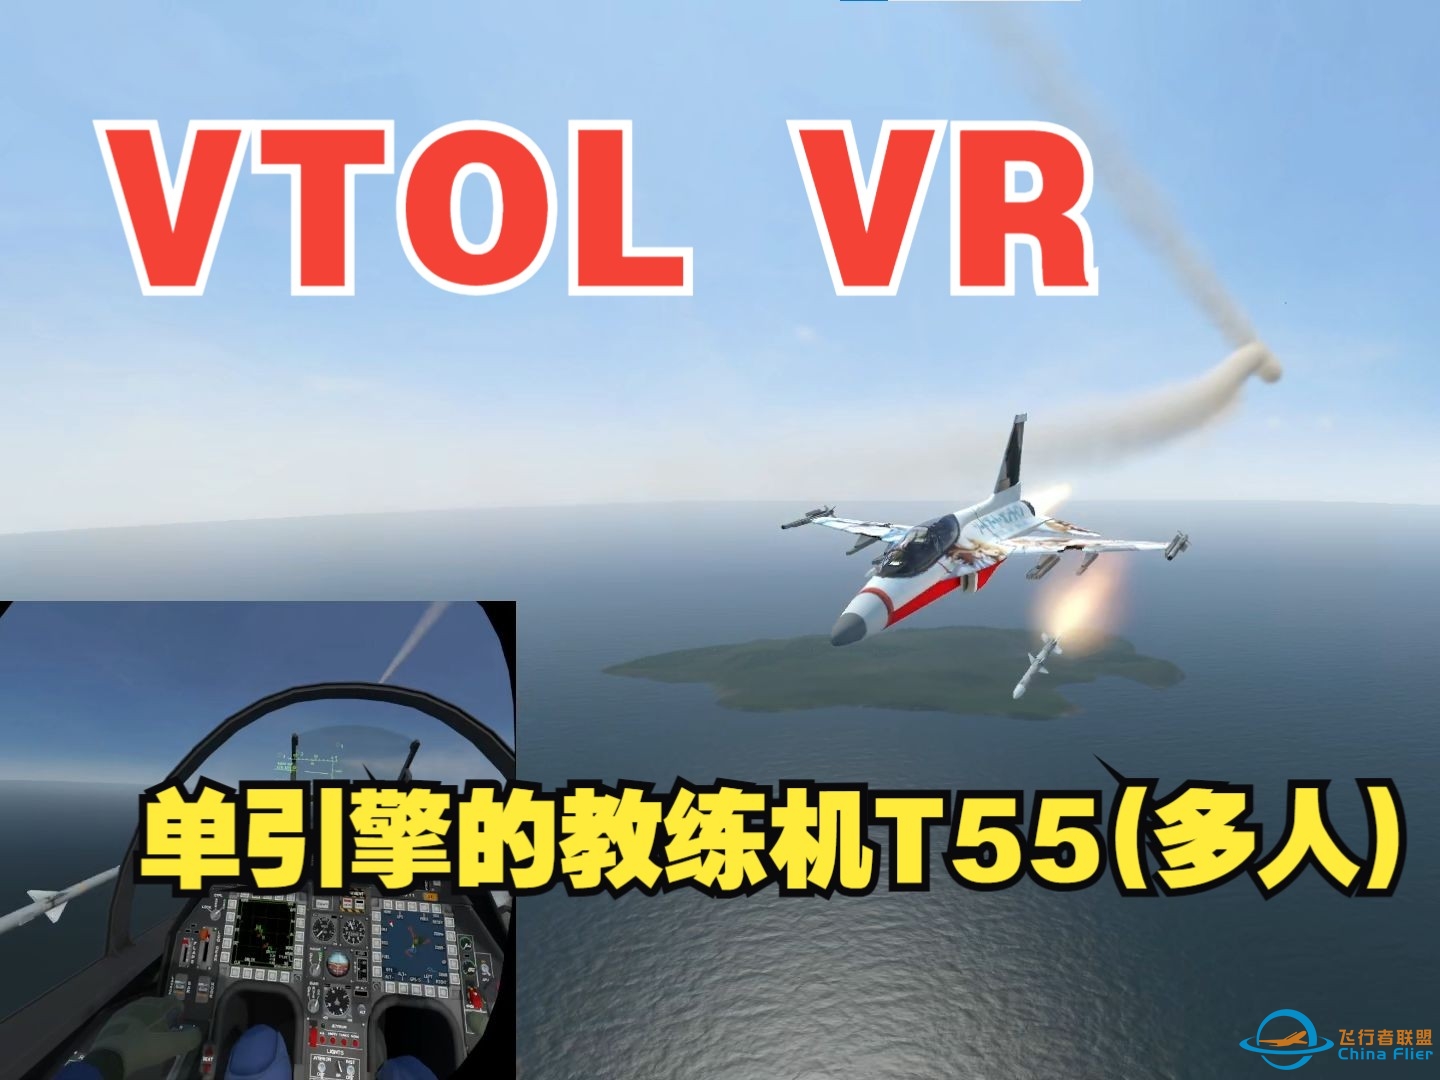 VTOL VR 练习单引擎的教练机T55(多人)-1624 